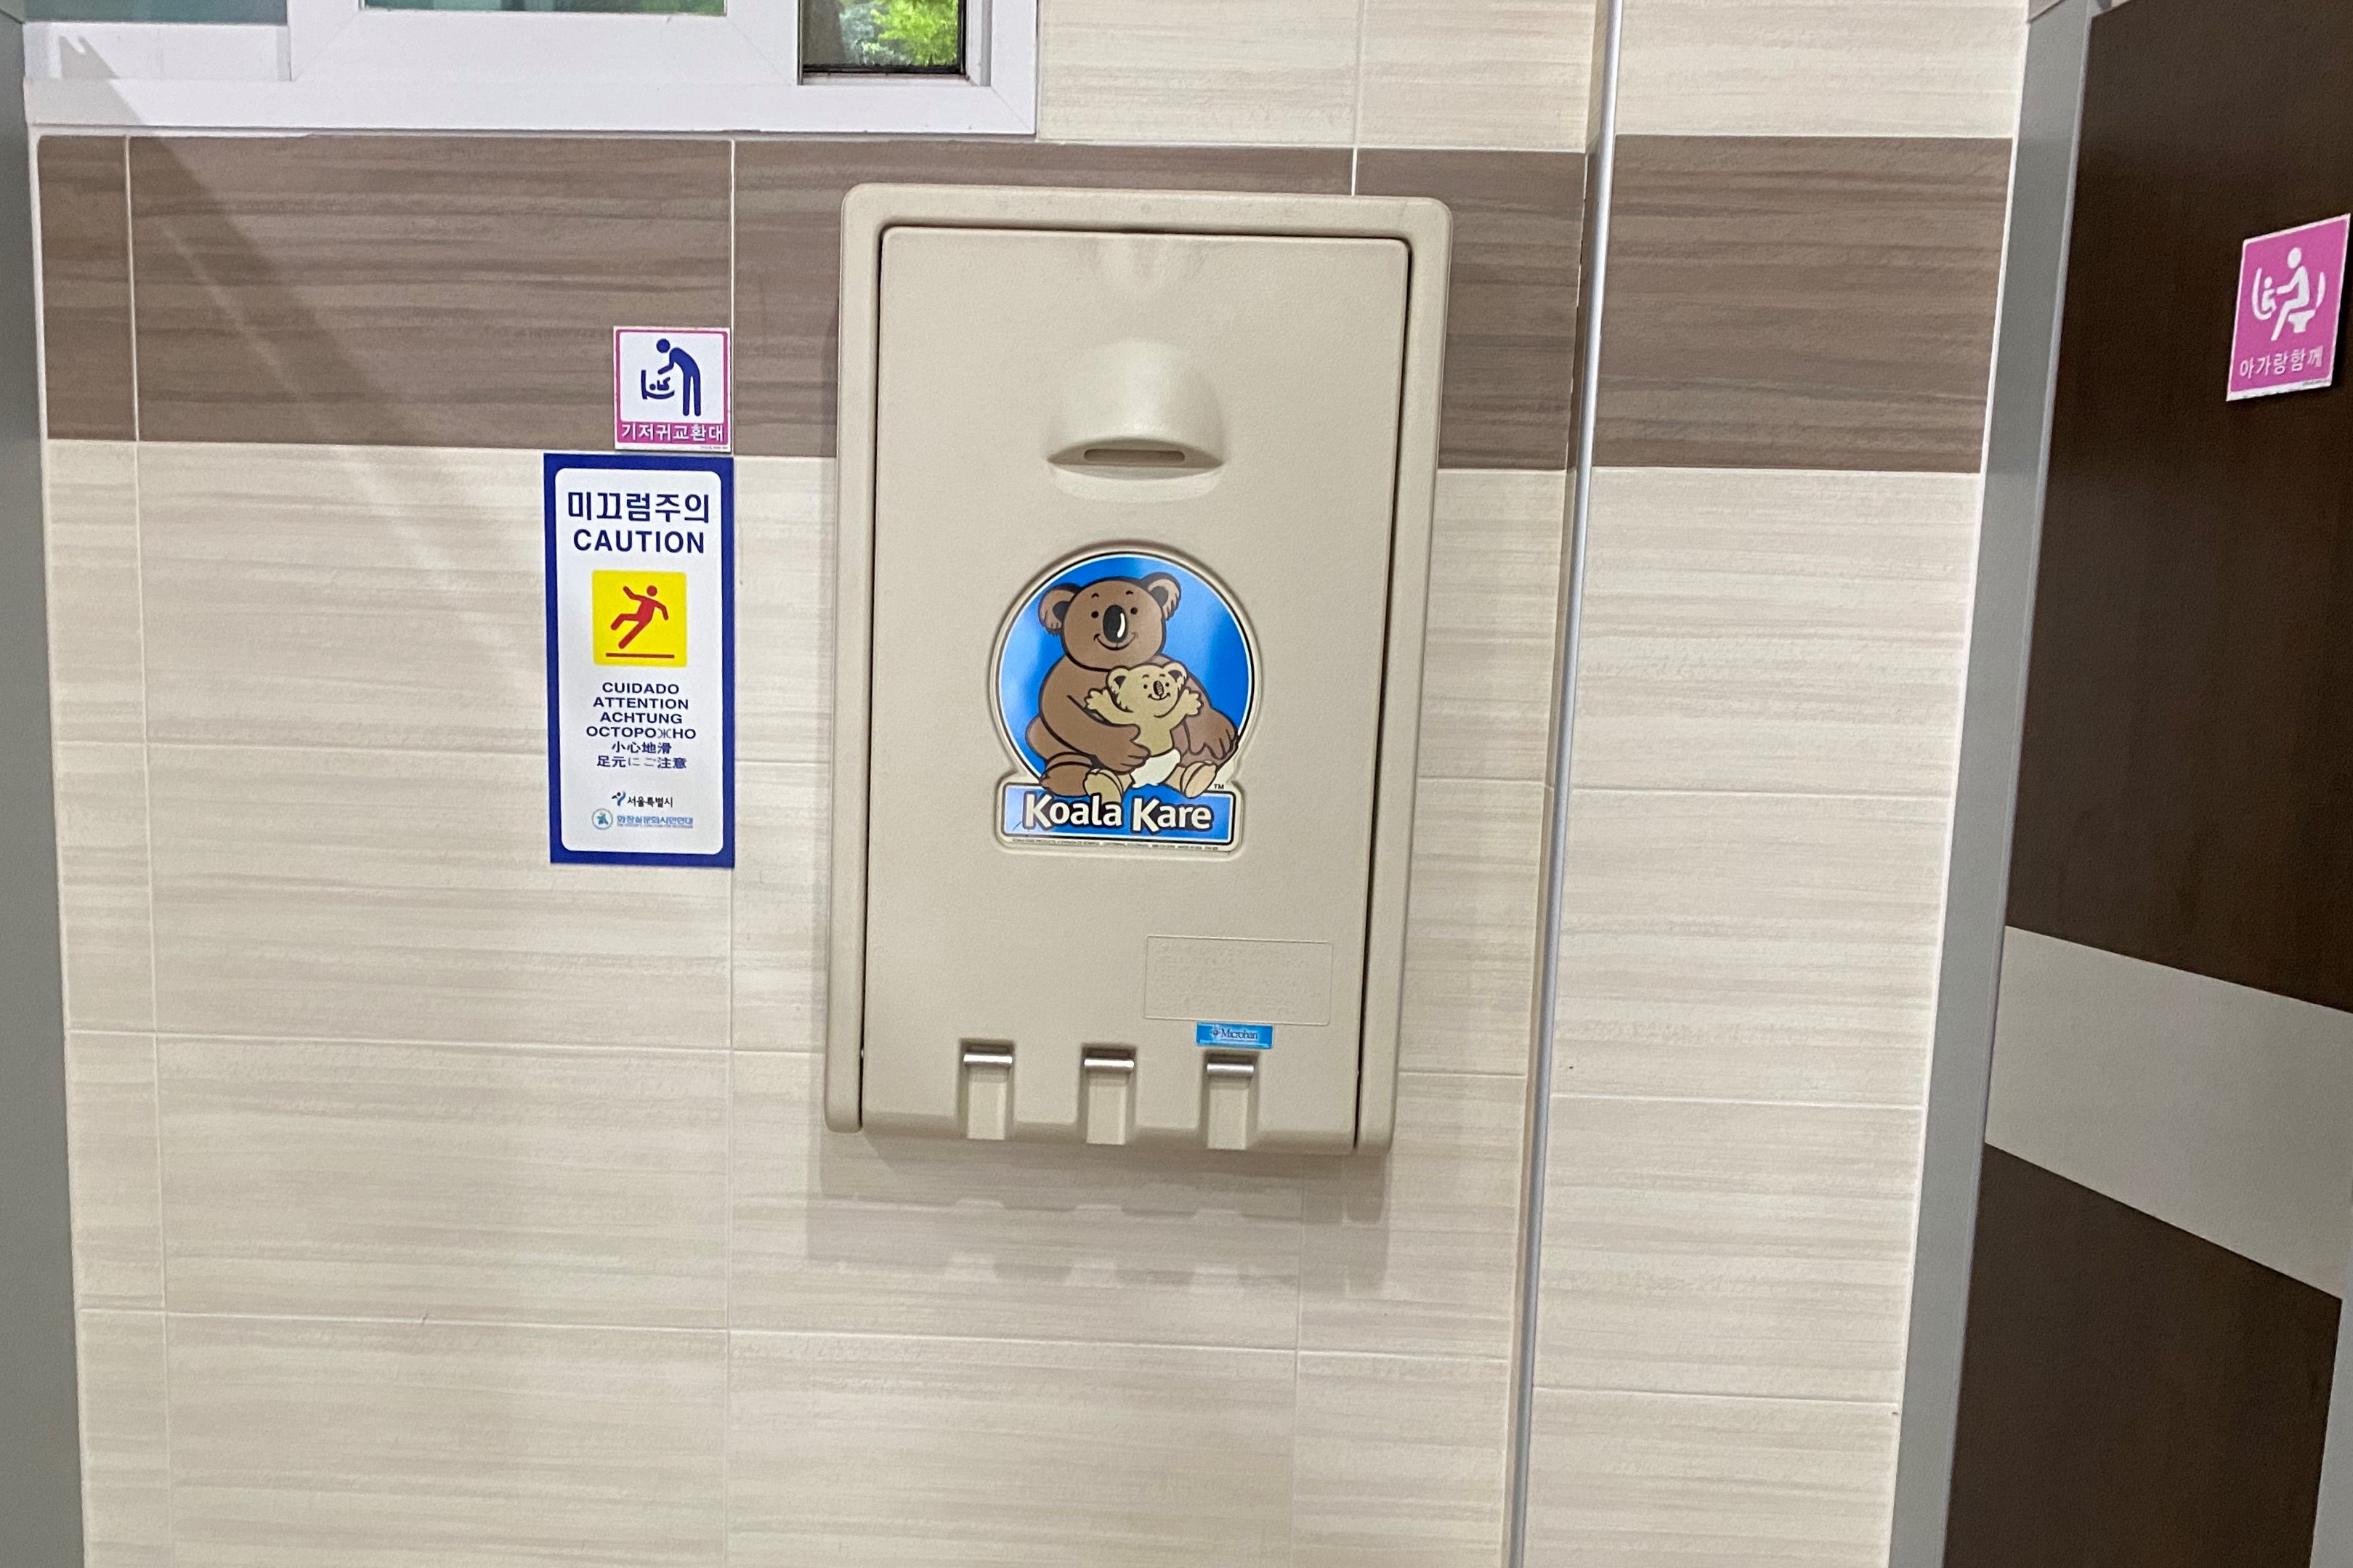 임산부/영유아휴게공간0 : 낙성대공원 수유실 내부에 설치된 기저귀교환대